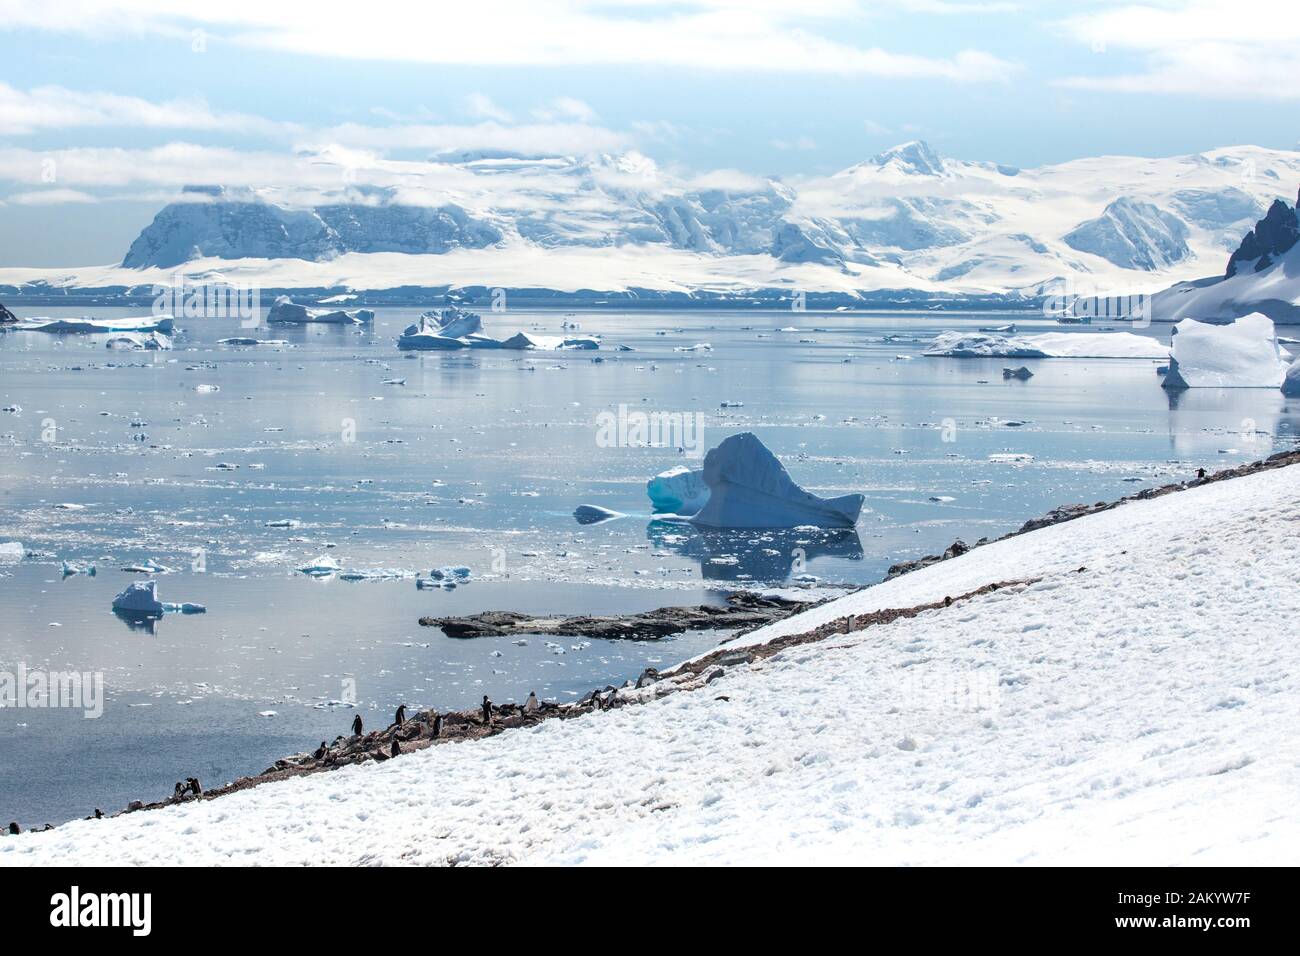 Colonie de pingouins Gentoo sur l'île Danco en regardant la mer à Icebergs, montagnes et Glaciers, île Danco, péninsule Antarctique, Antarctique Banque D'Images